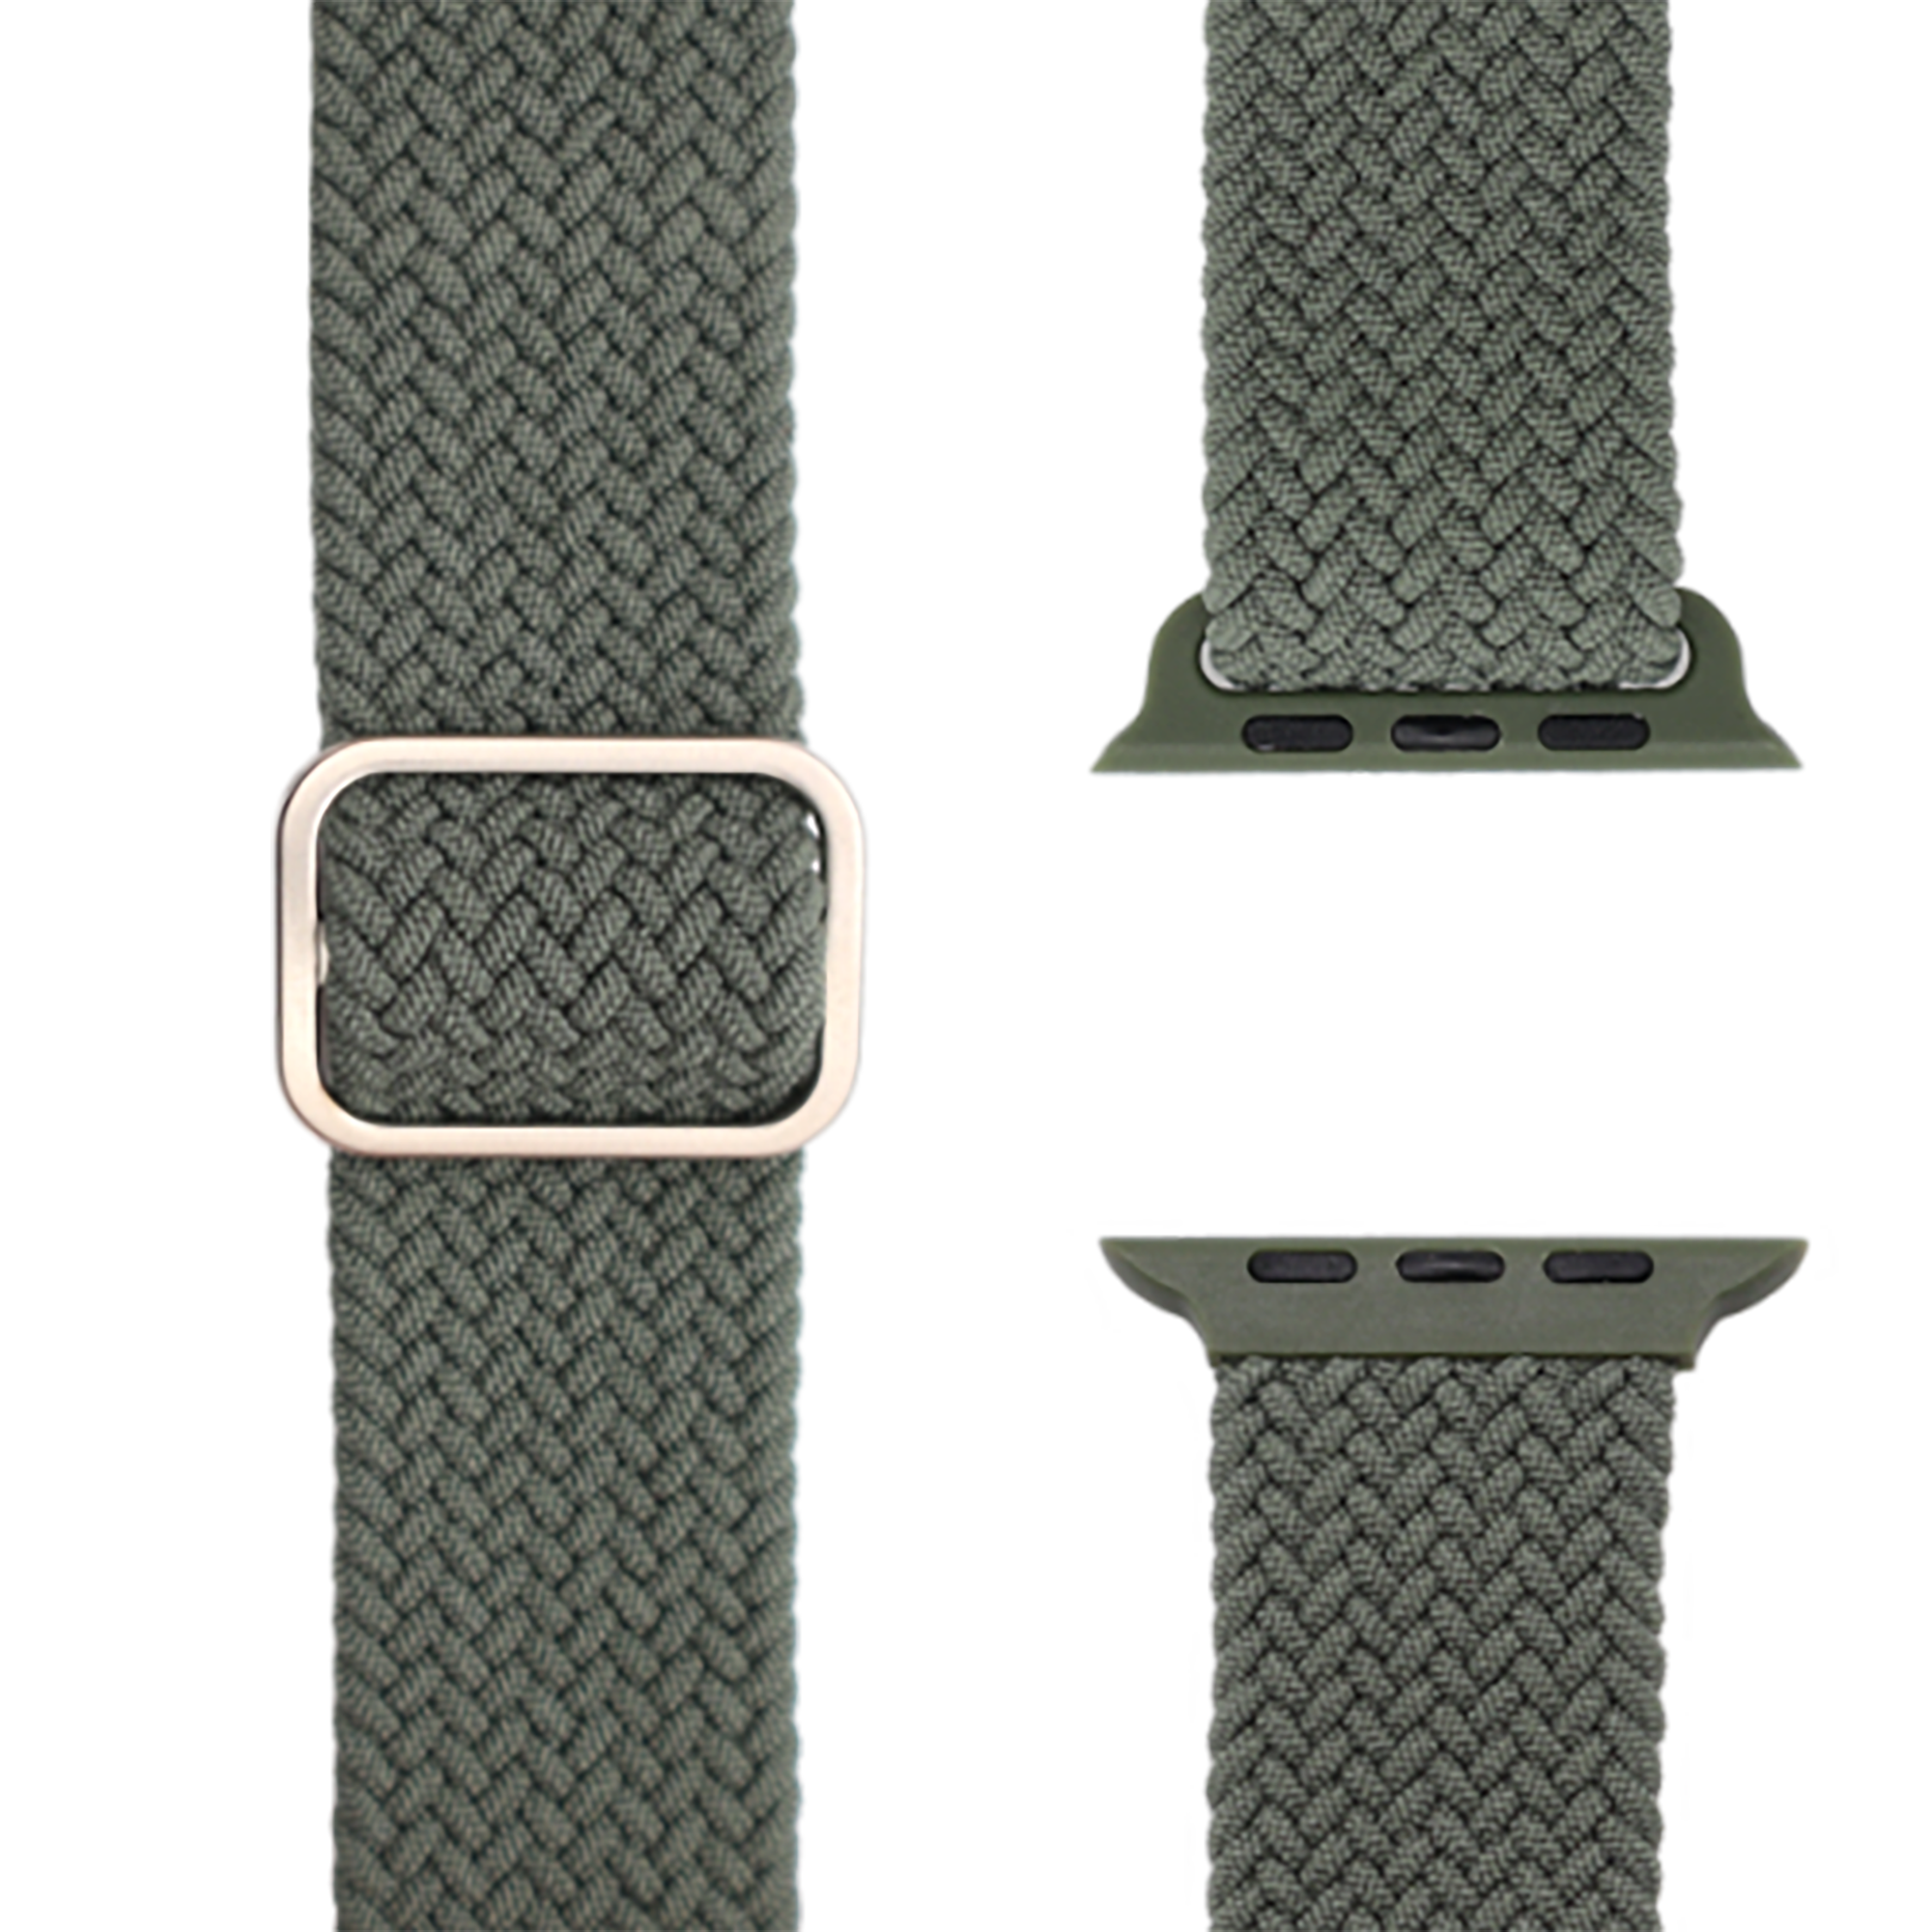 APFELBAND Geflochtenes Flex Loop 1 41mm, Grün | und 9 | - Watch 40mm Ersatzarmband, 38mm Apple, Series SE, Series 